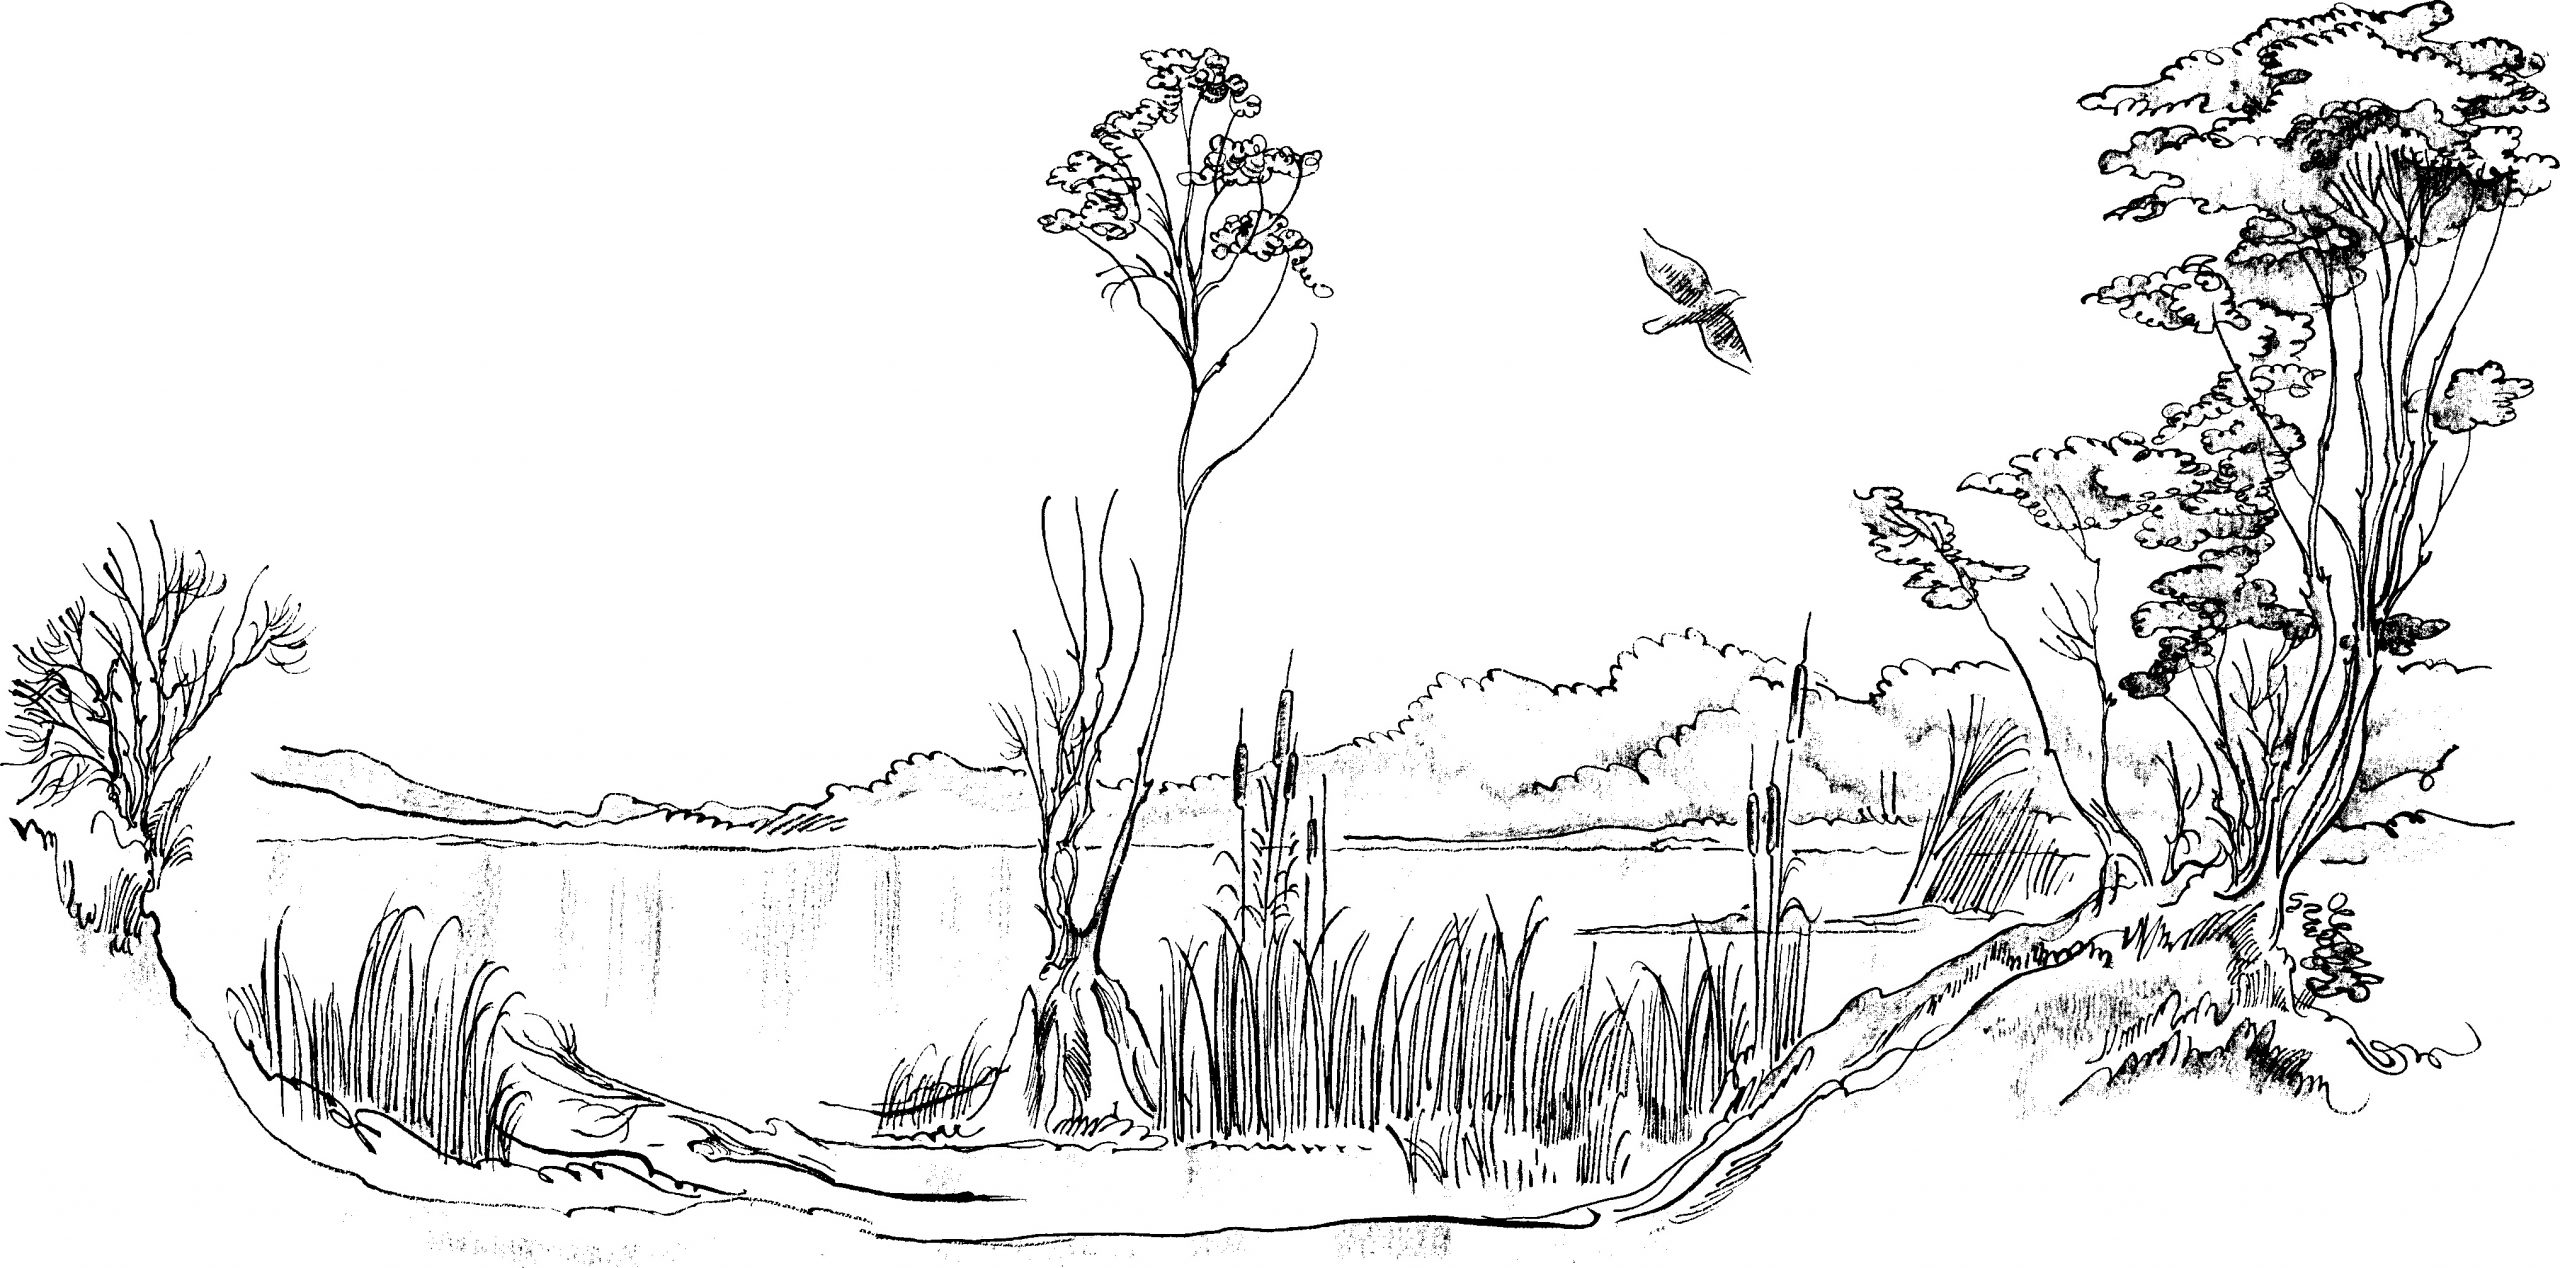 gambar sketsa pemandangan alam danau